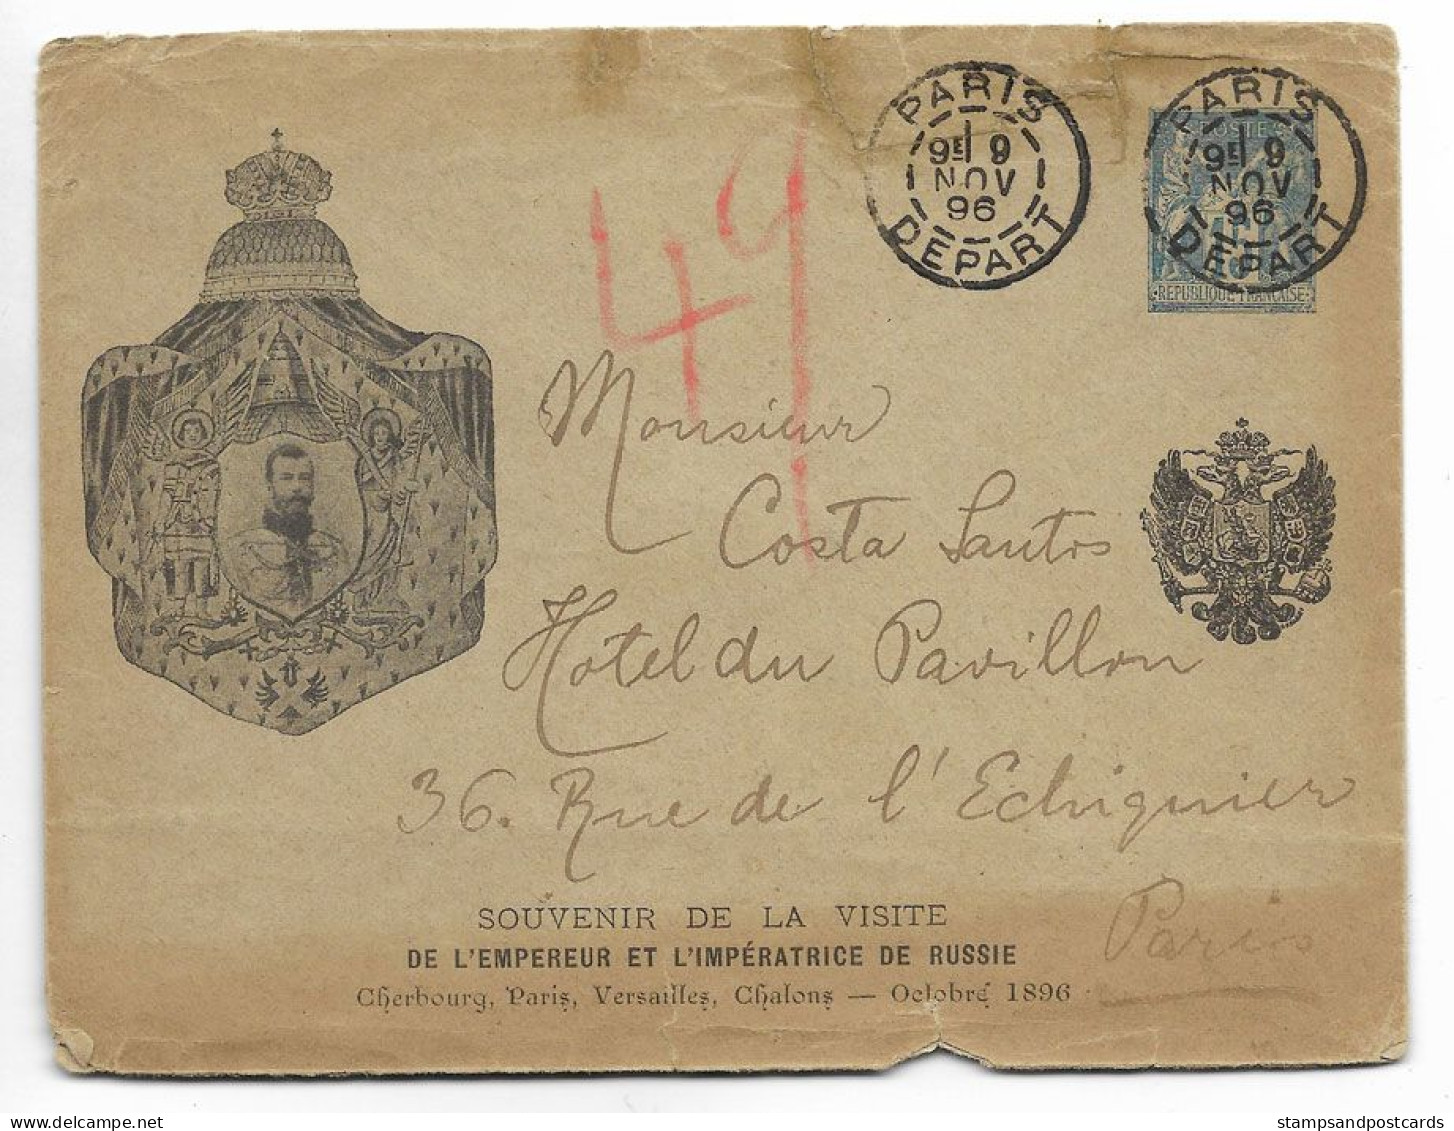 France Souvenir Visite Empereur Russie 1896 Rare Carte Entier Repiqué Voyagé Russia Czar Visit France Stationery Cover - Kartenbriefe